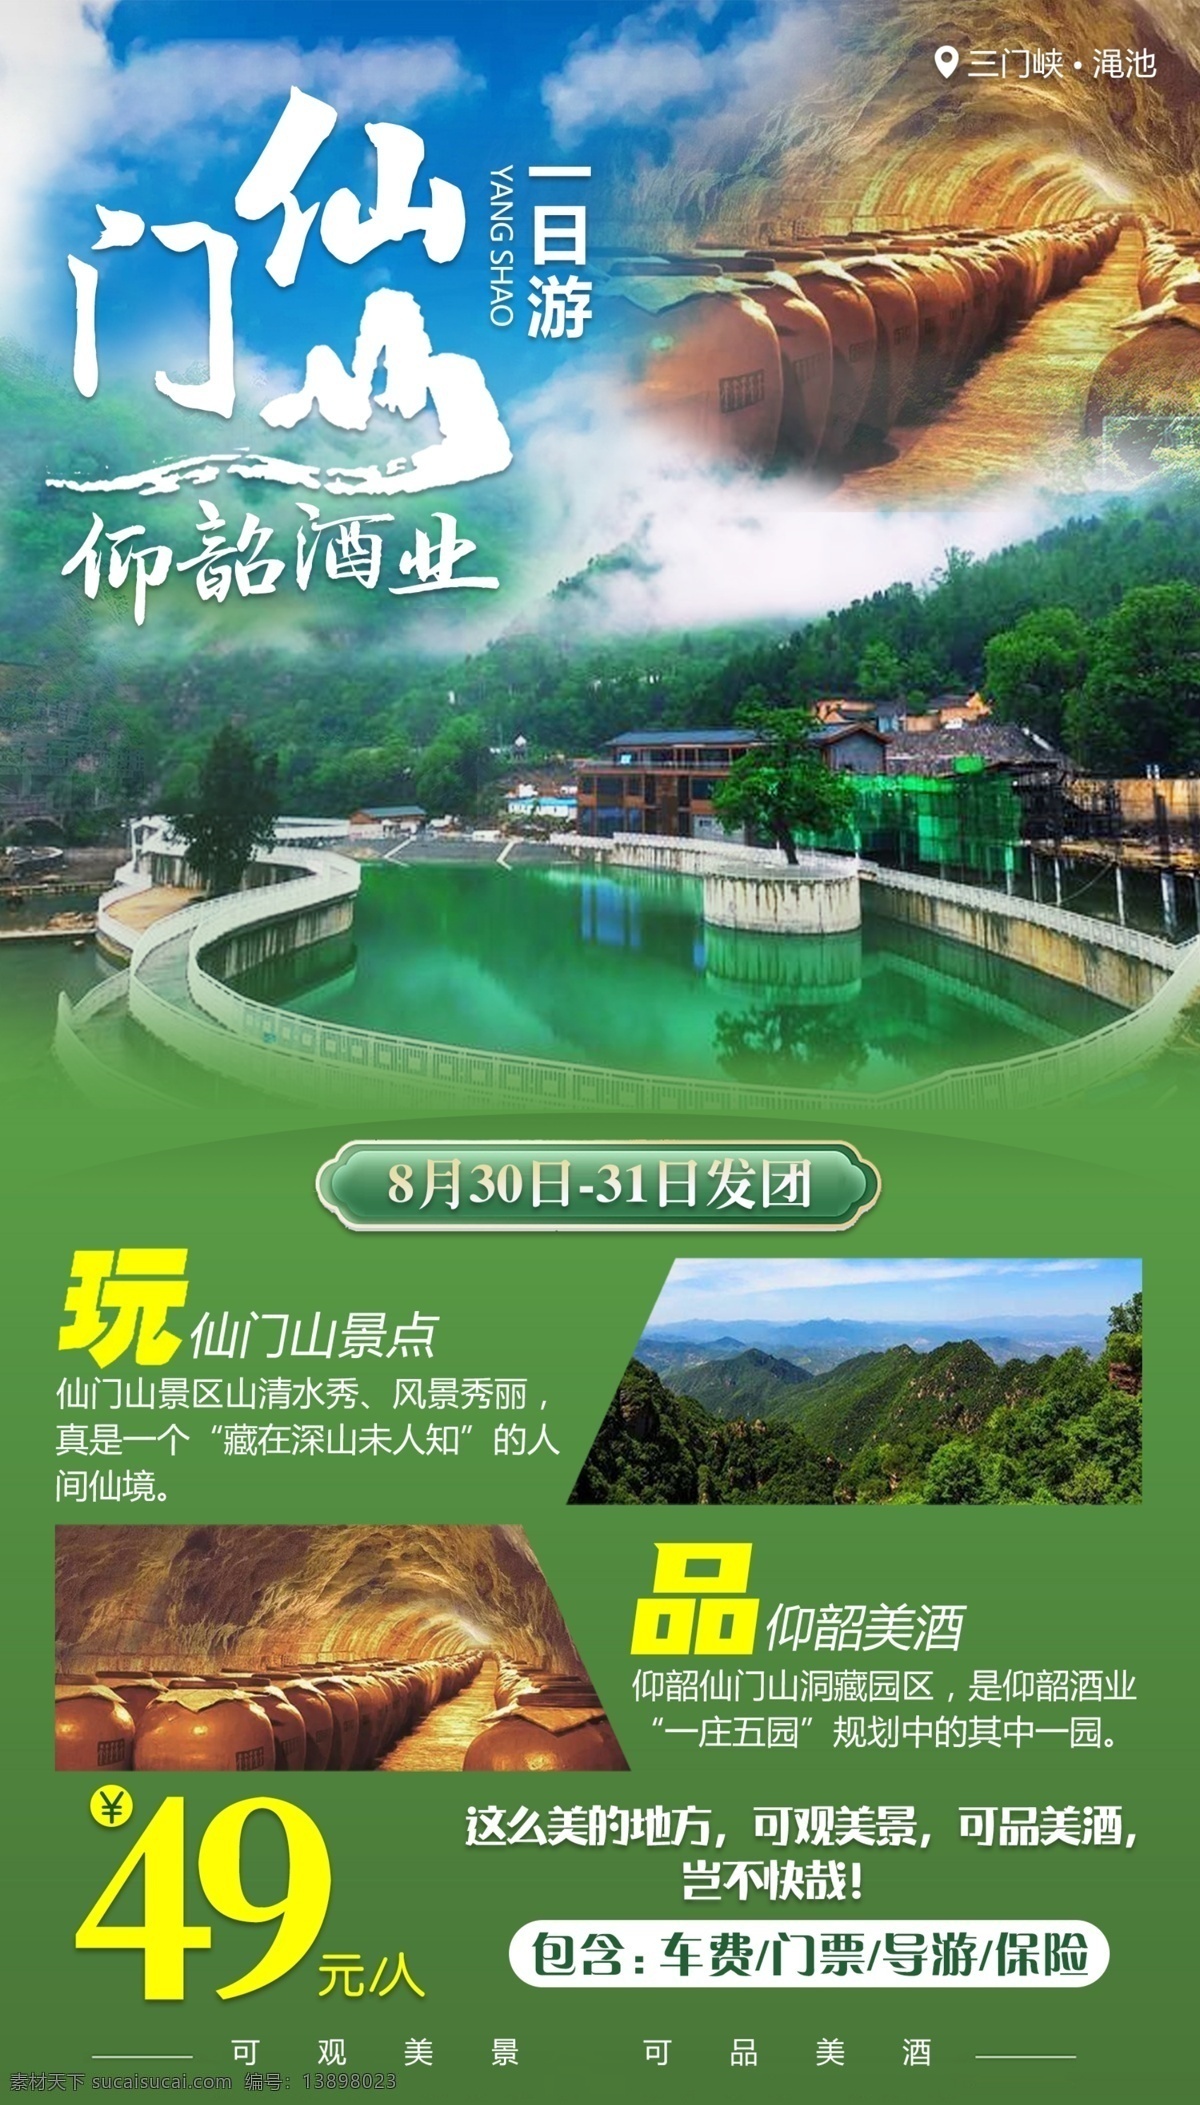 旅游海报 旅游 旅游展板 一日游 景区景点 仙门山 旅游手机海报